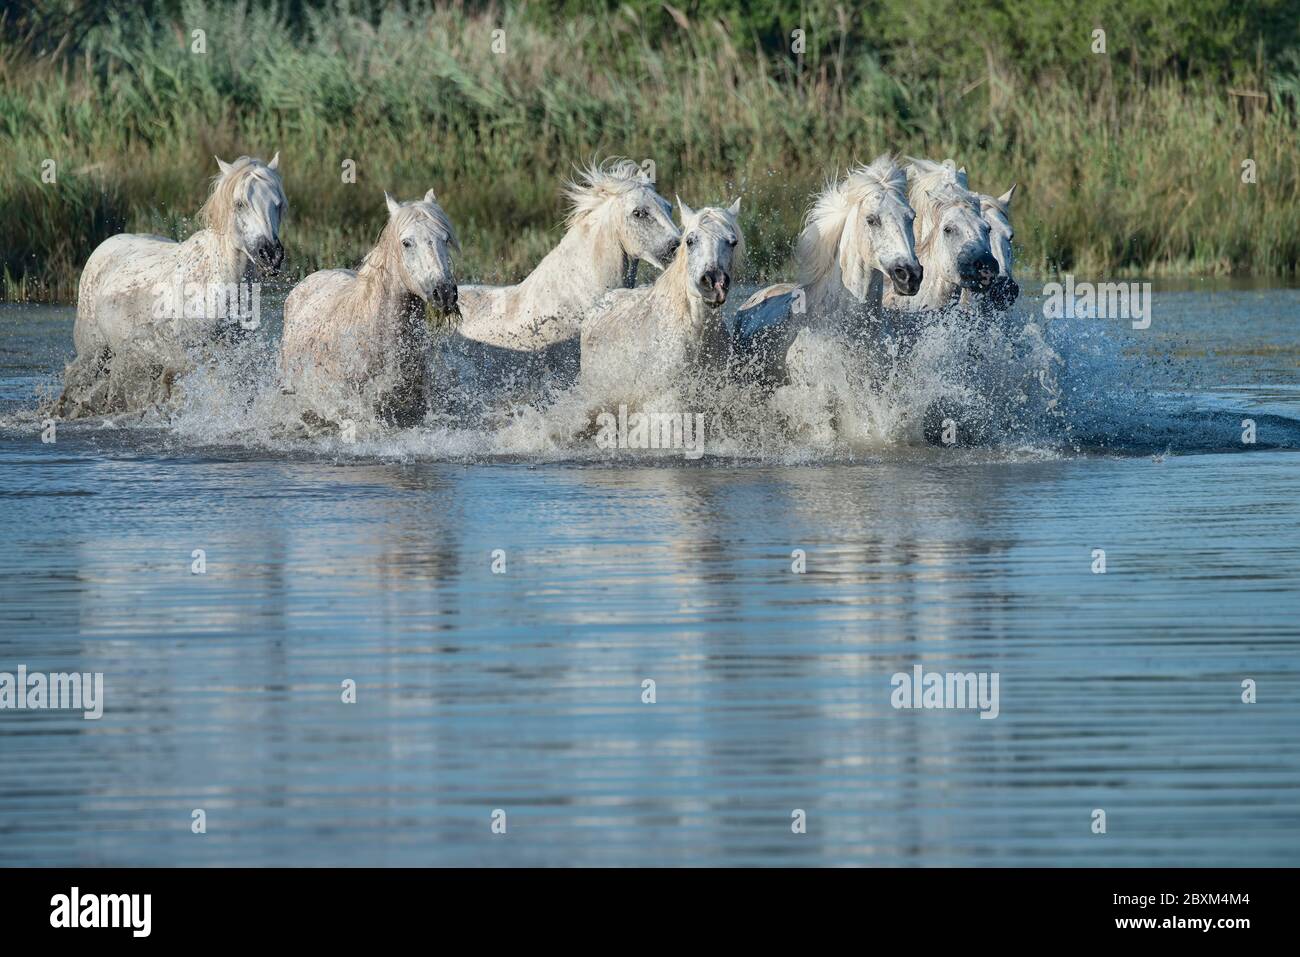 Herd of White Horses Running in the Water Stock Photo